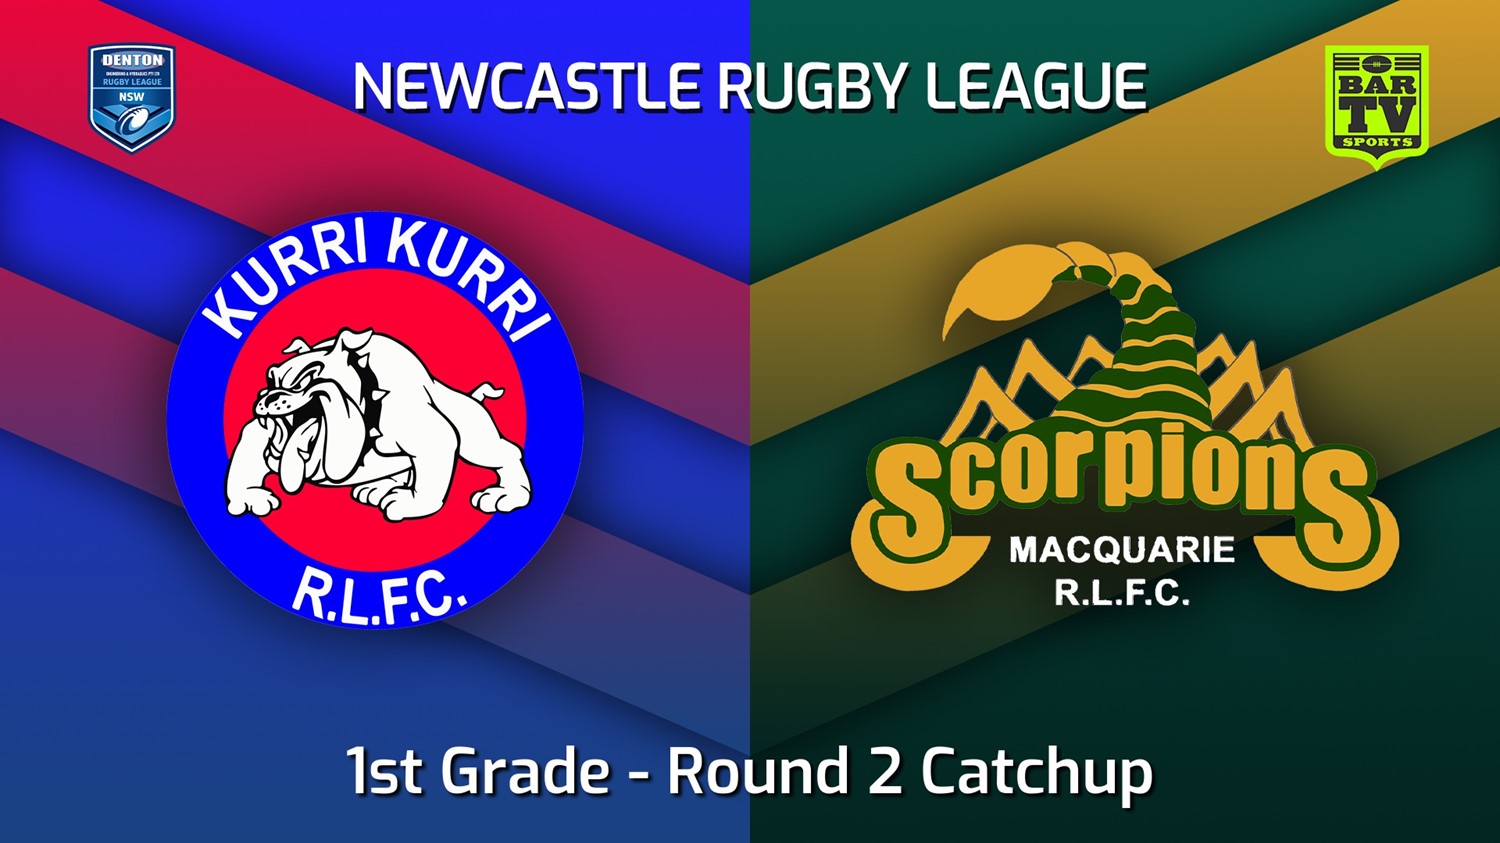 220515-Newcastle Round 2 Catchup - 1st Grade - Kurri Kurri Bulldogs v Macquarie Scorpions Slate Image